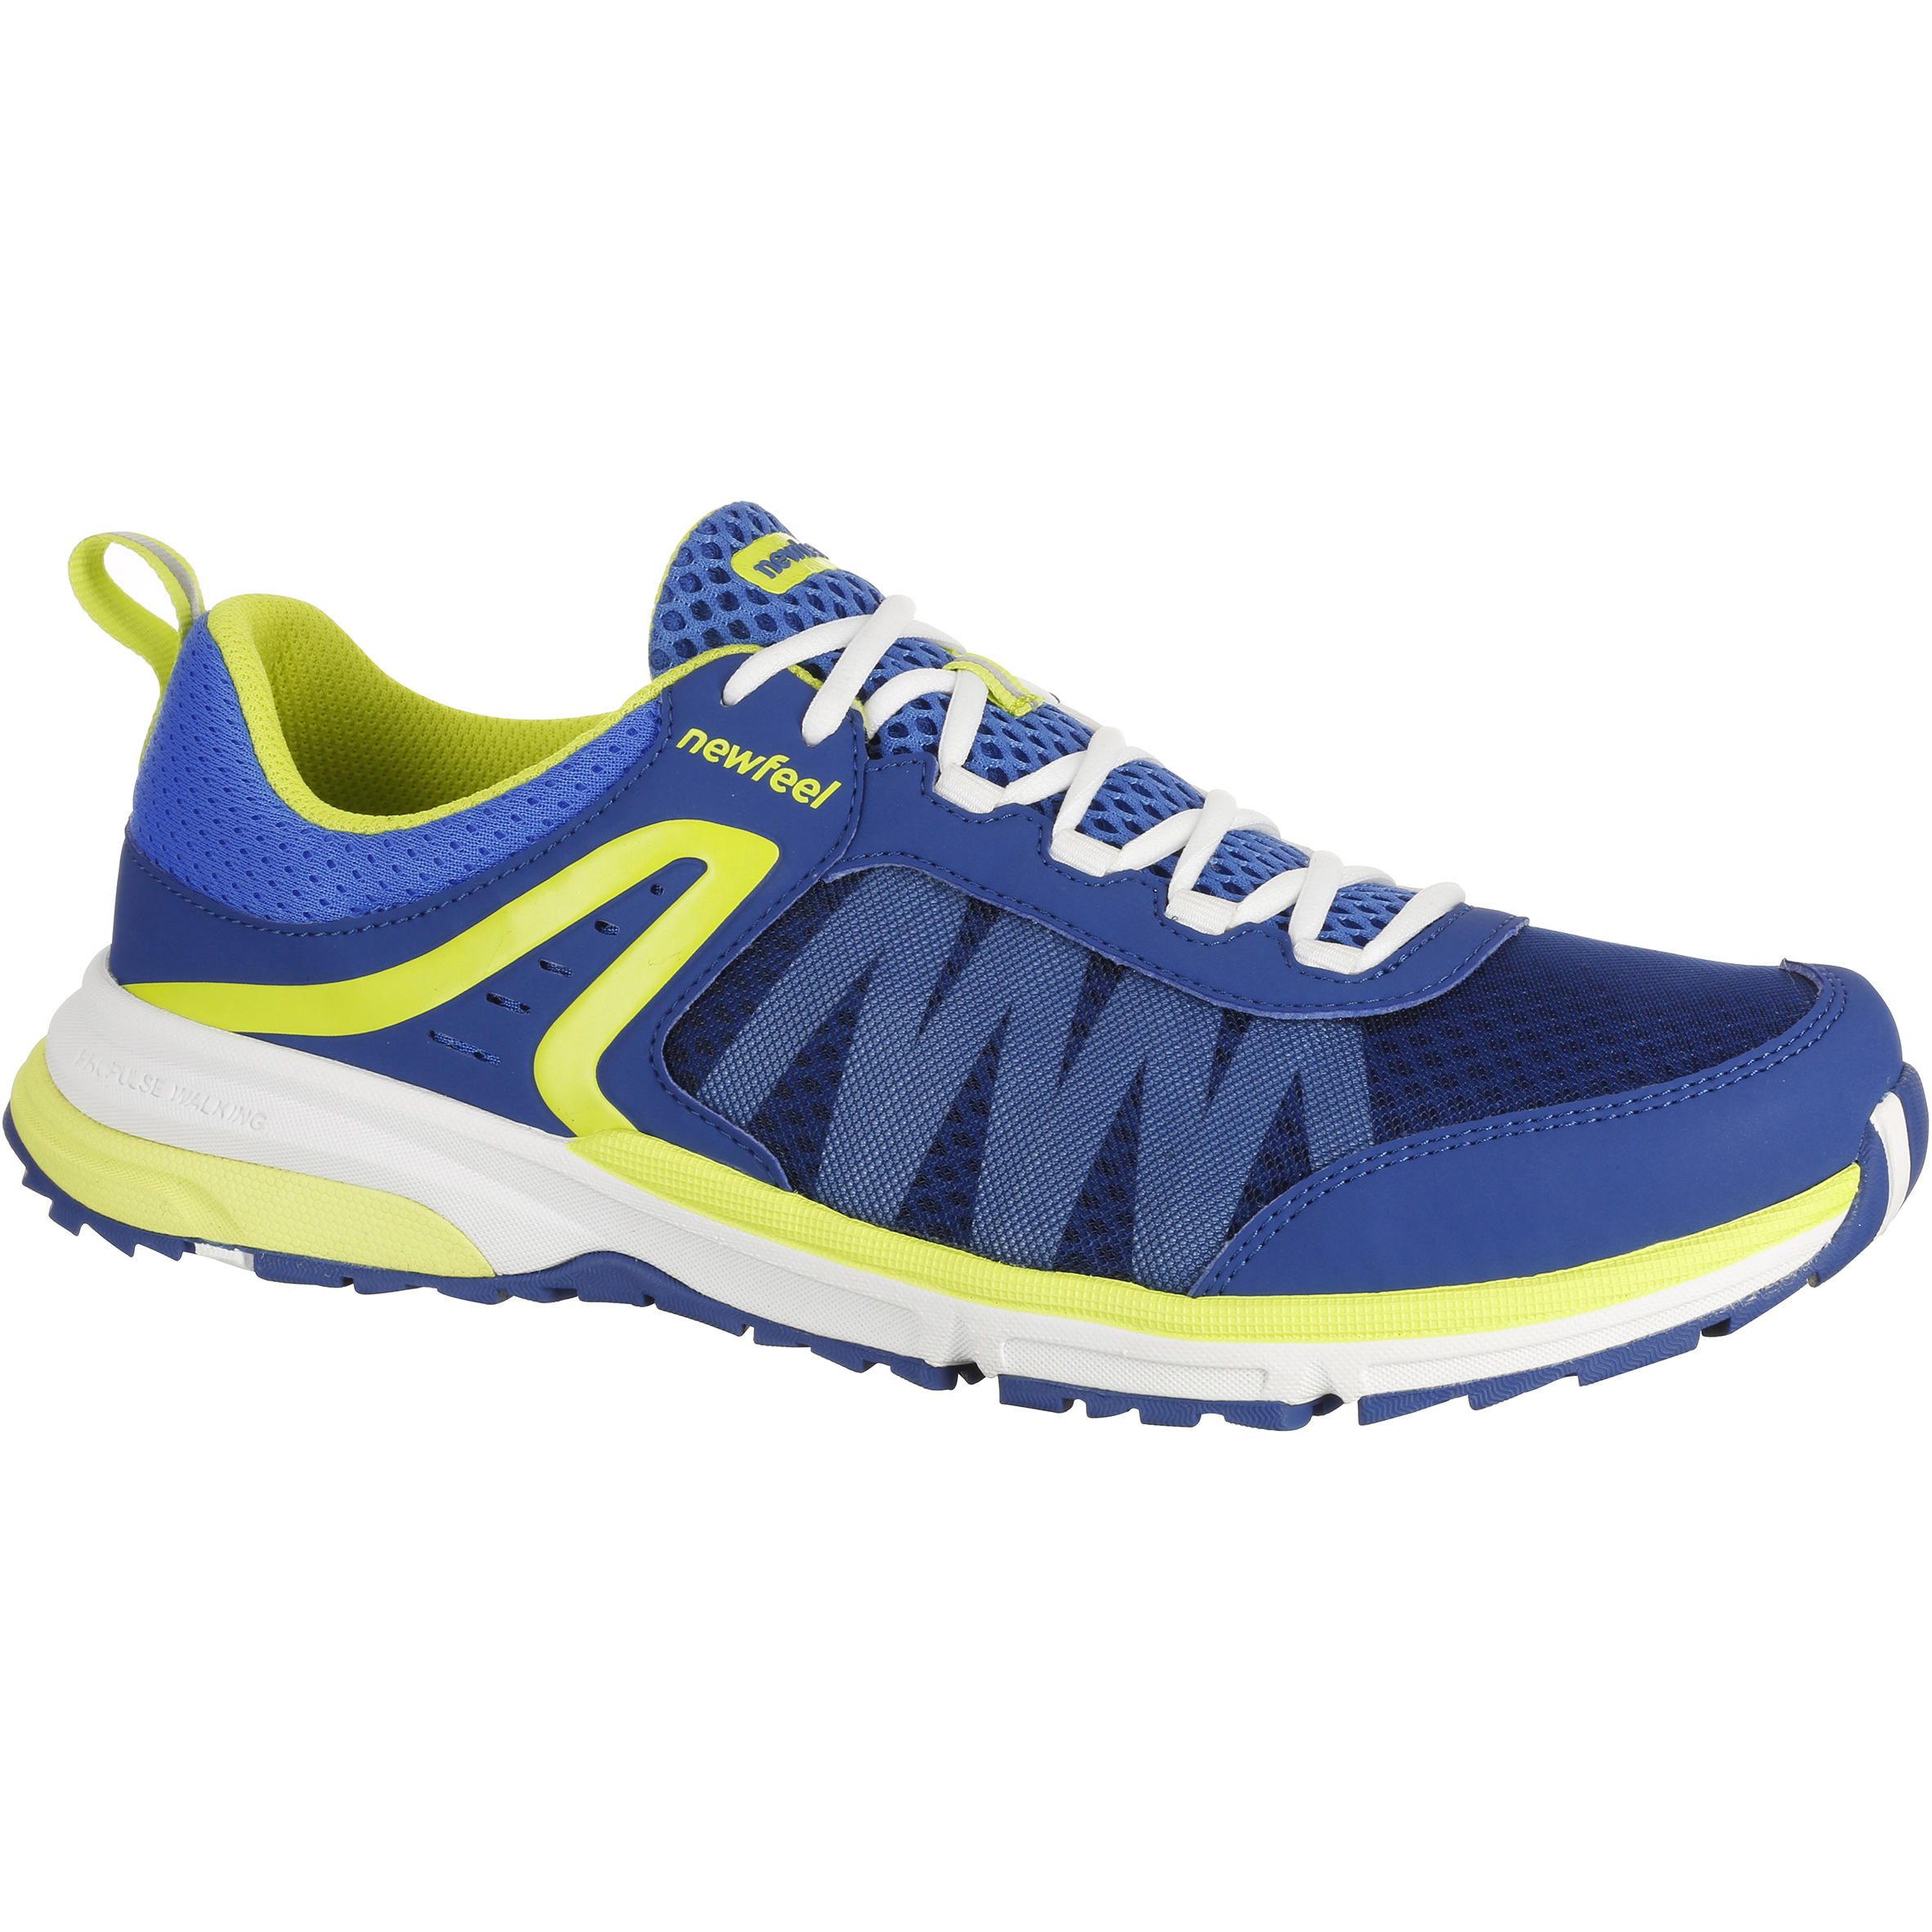 NEWFEEL Propulse Walk 300 Men's Fast Walking Shoes - Blue/Yellow